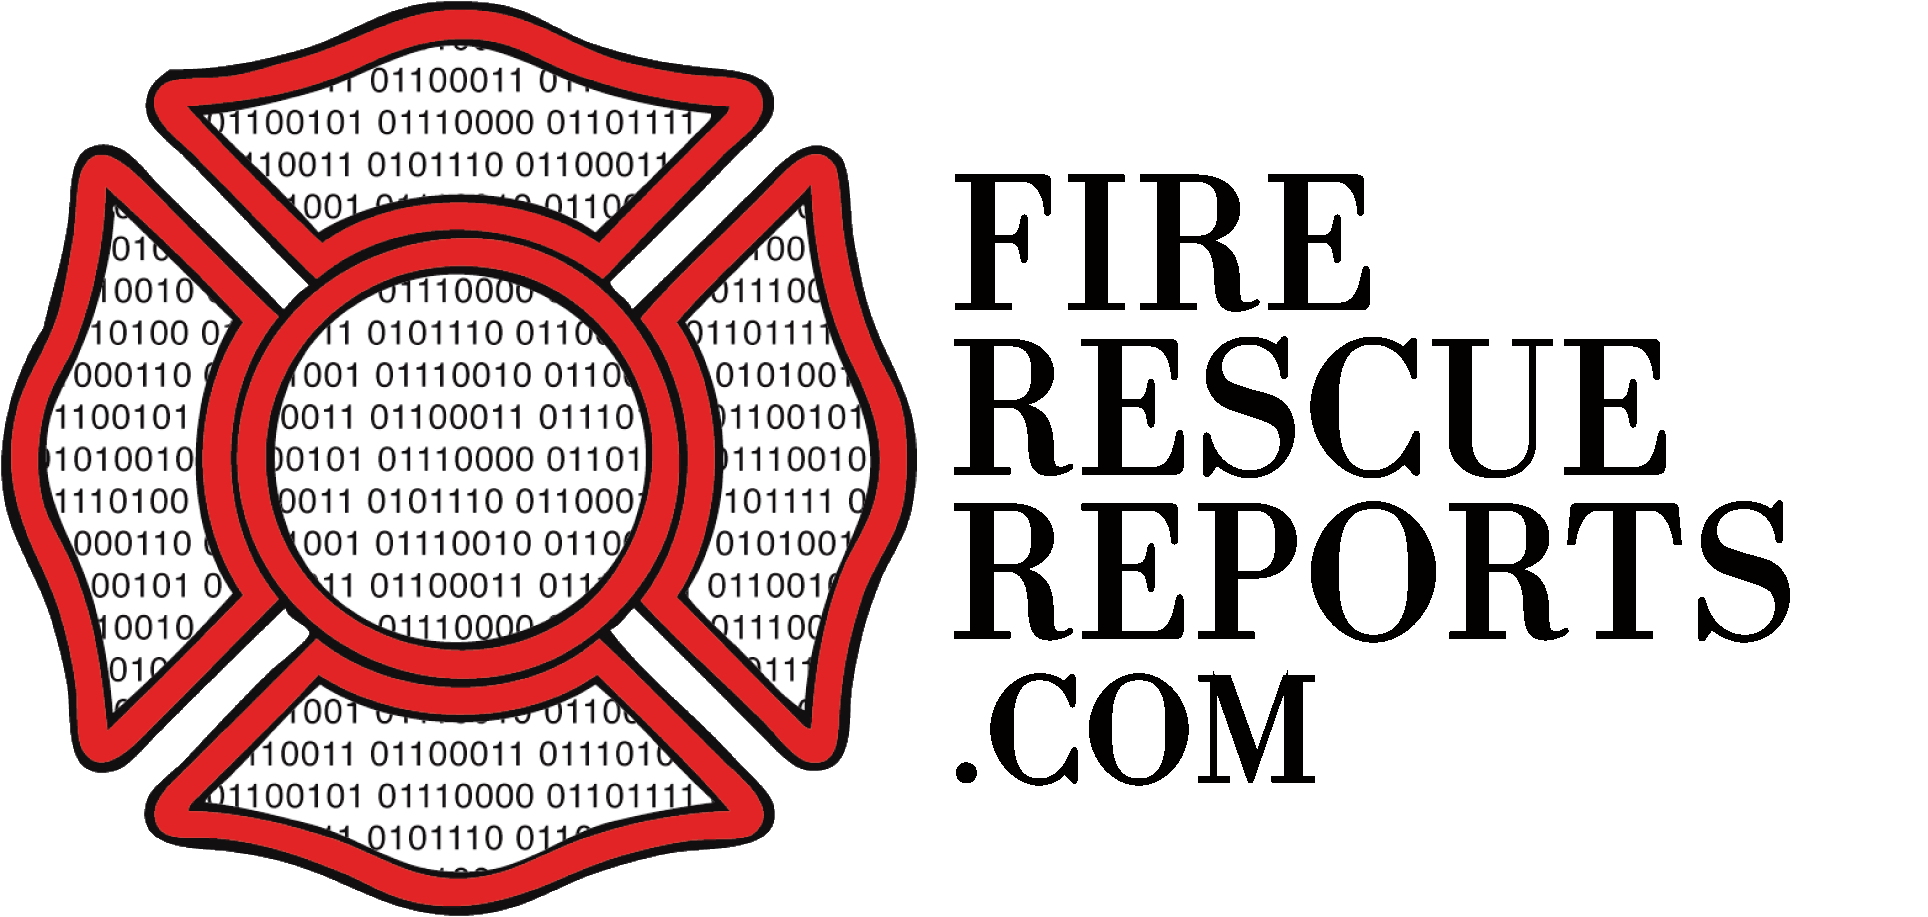 Fire Department Logo Clipart